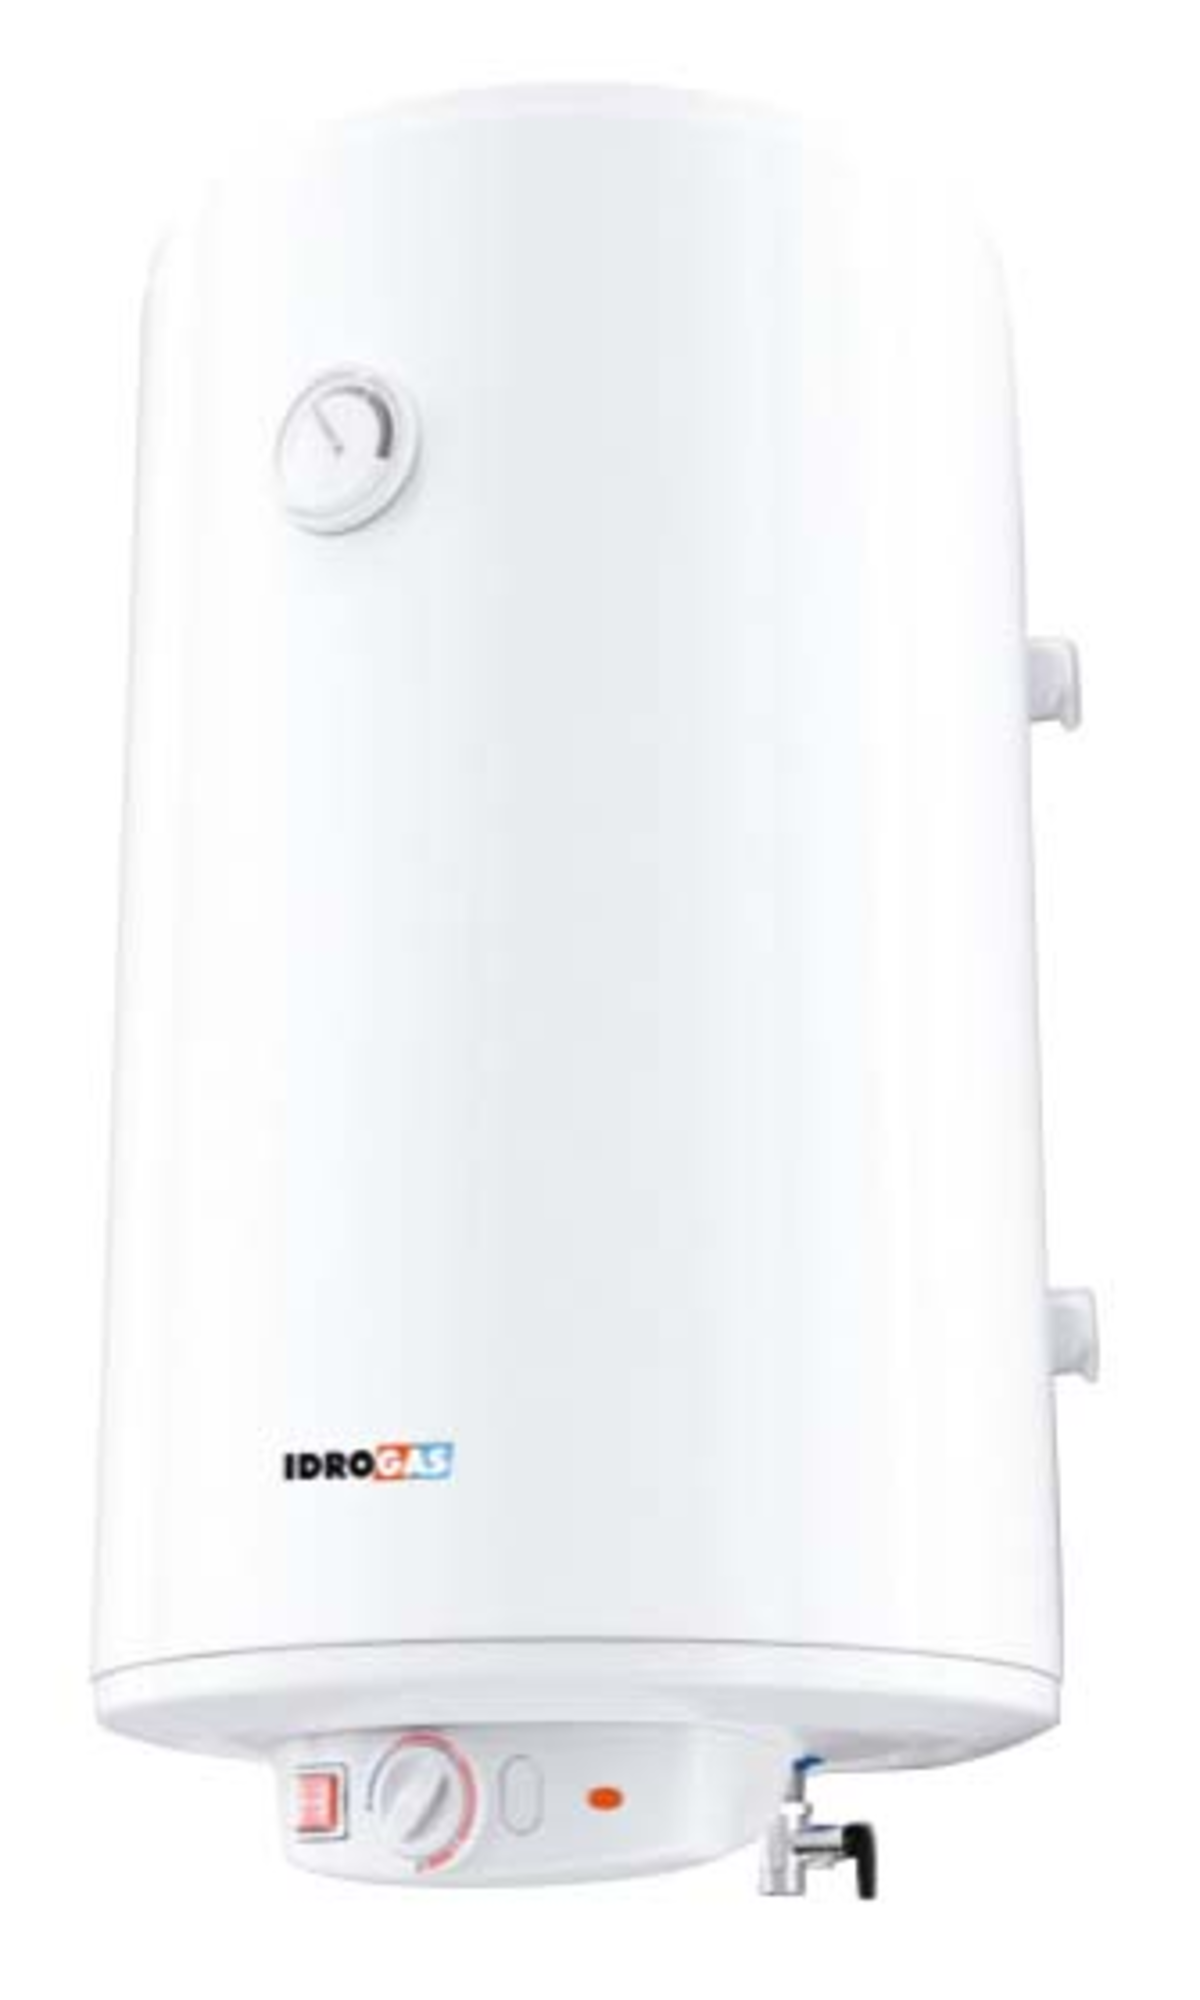 Idrogas Celsior Dry calentador de agua 80 litros capacidad termo y